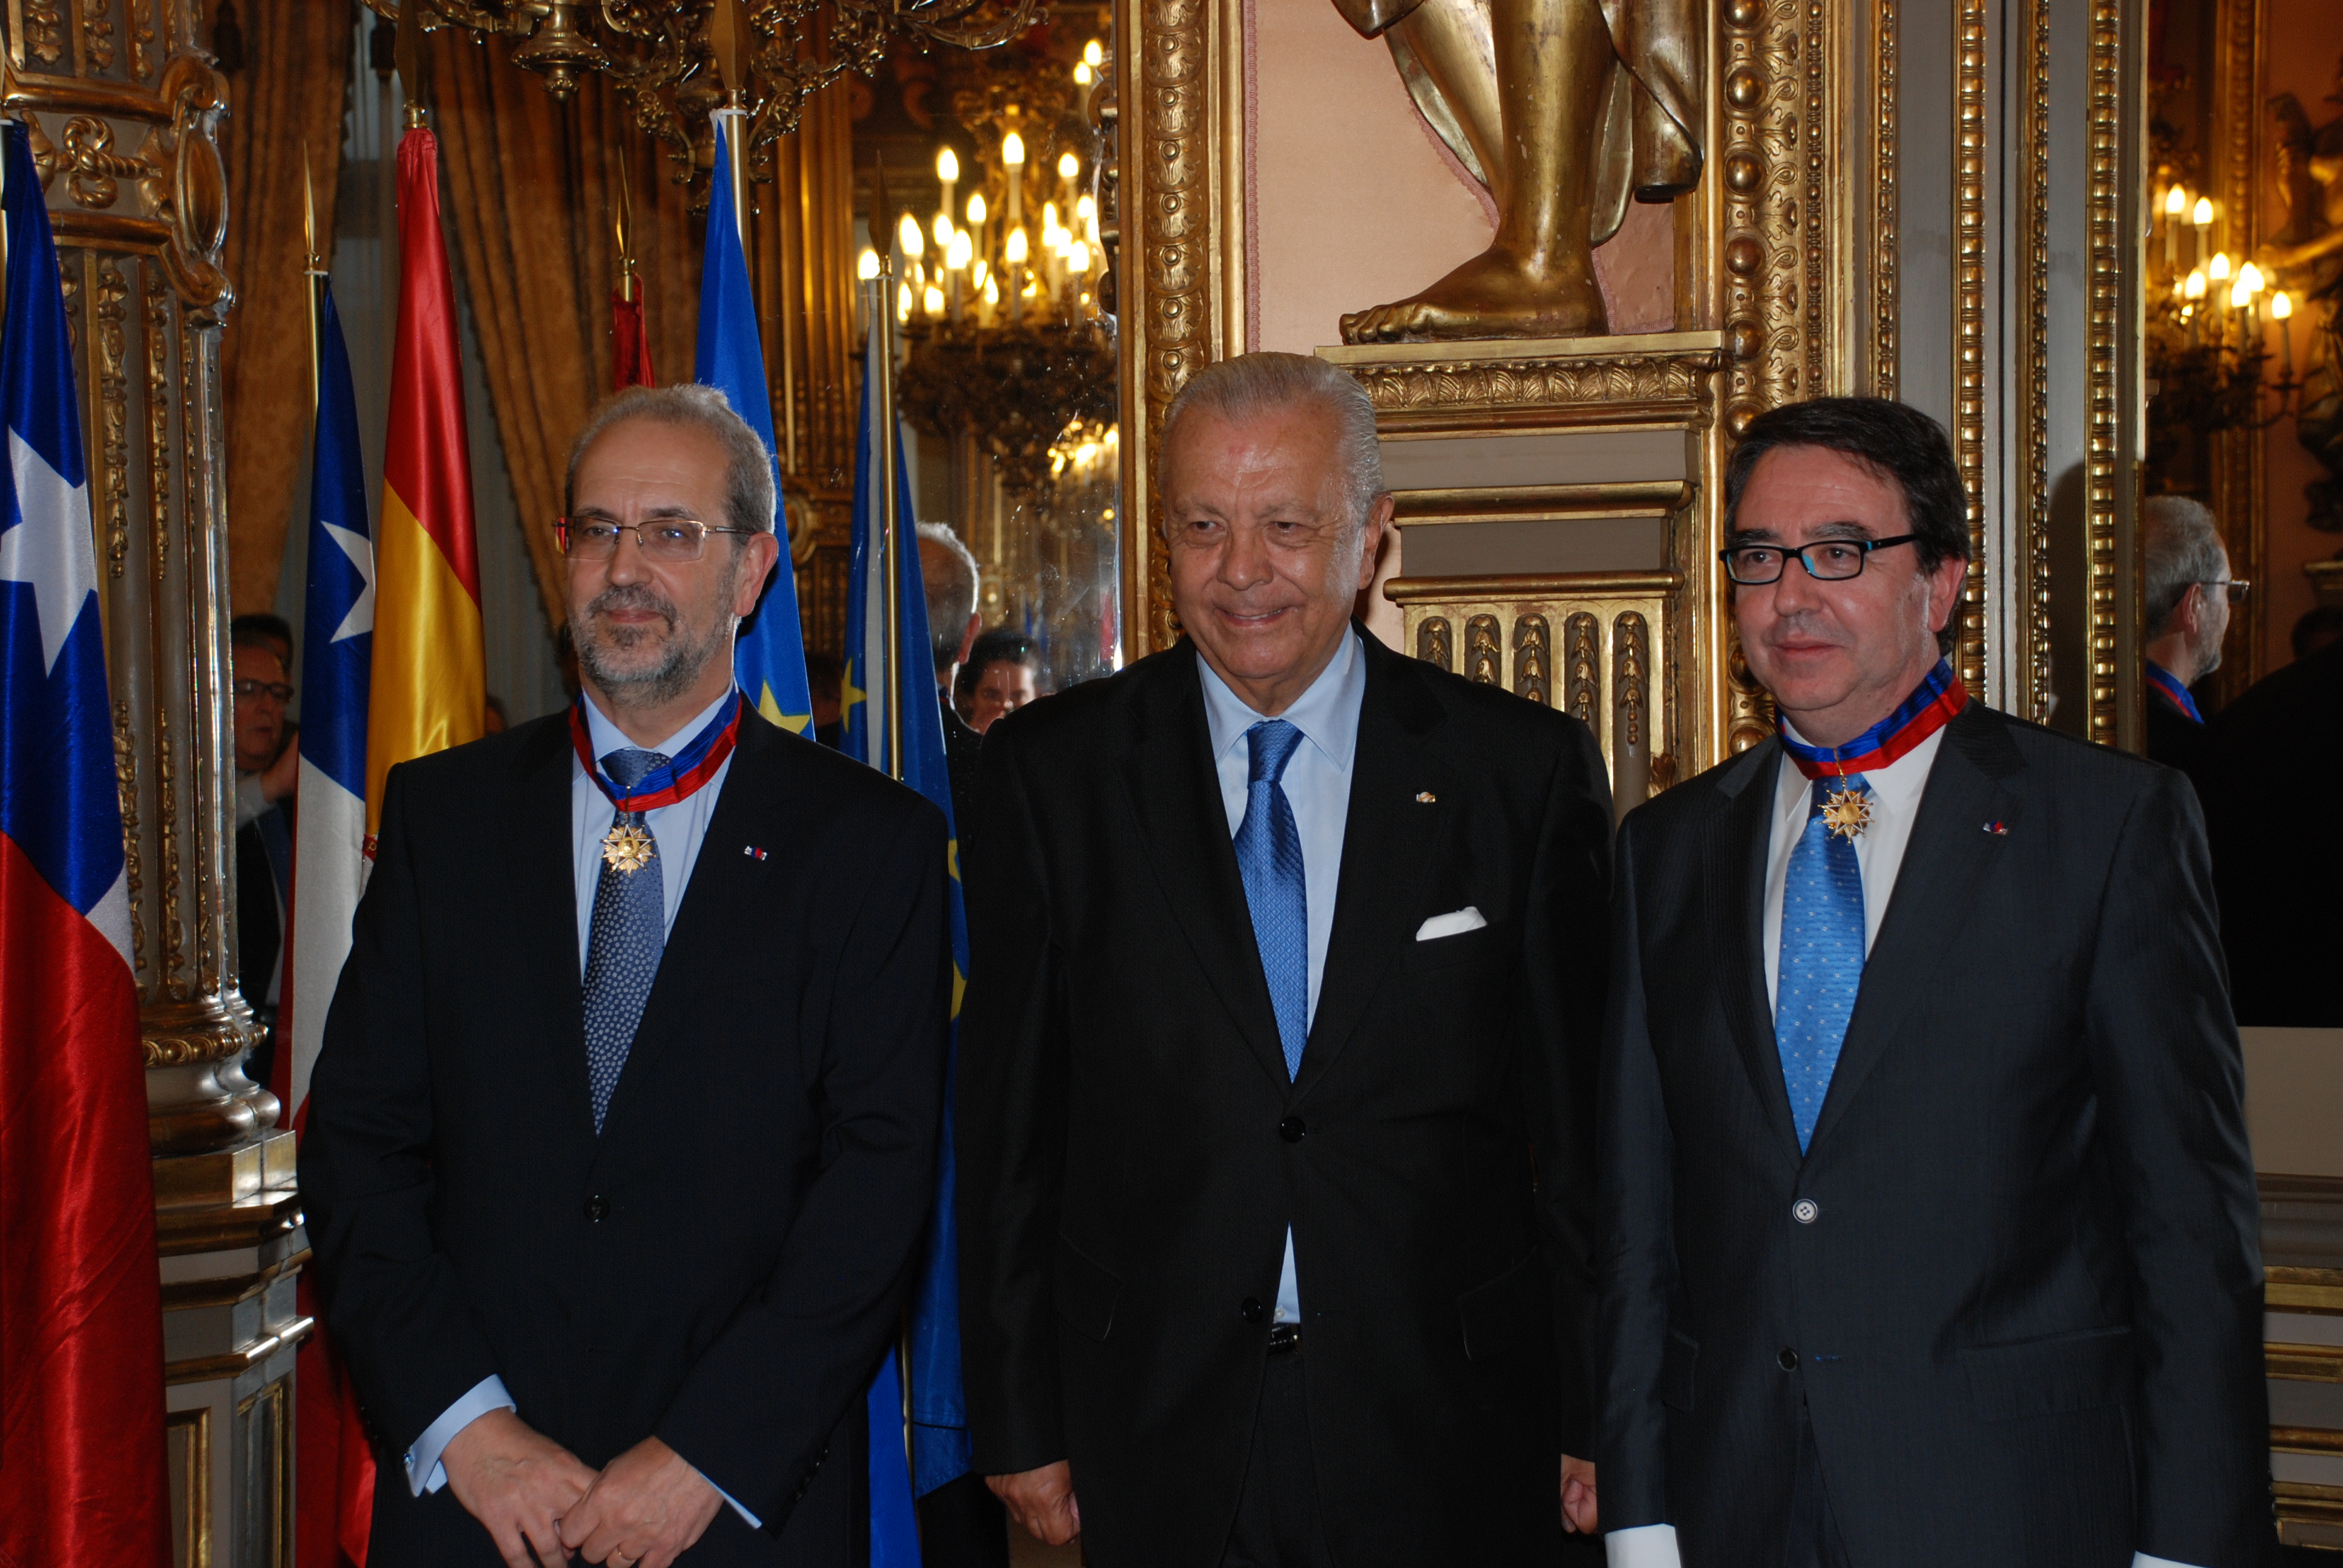 El rector de la Universidad de Salamanca, Daniel Hernández Ruipérez, ha sido distinguido con la Orden ‘Bernardo O’Higgins’